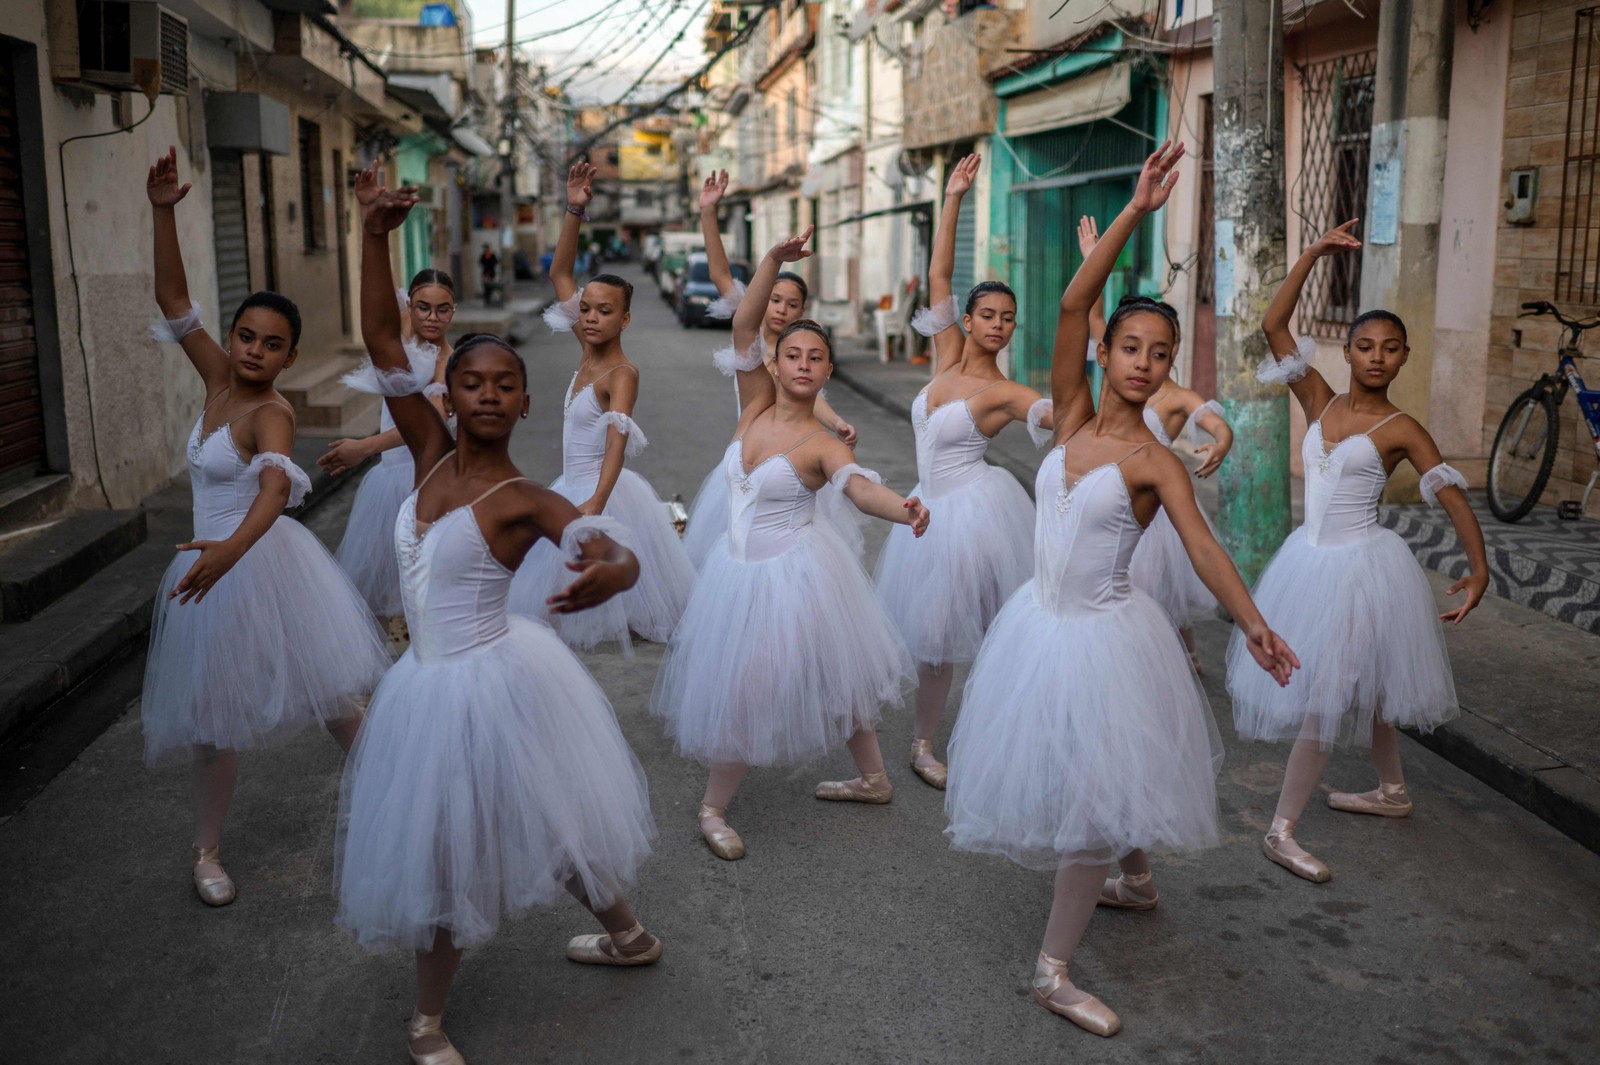 Alunos da Escola de Ballet Manguinhos praticam movimentos da dança após sessão de fotos na favela do Rio de Janeiro. Com cerca de 400 alunos entre seis e 29 anos o projetoi enfrenta a possibilidade de fechamento devido a dificuldades financeiras  — Foto: MAURO PIMENTEL / AFP